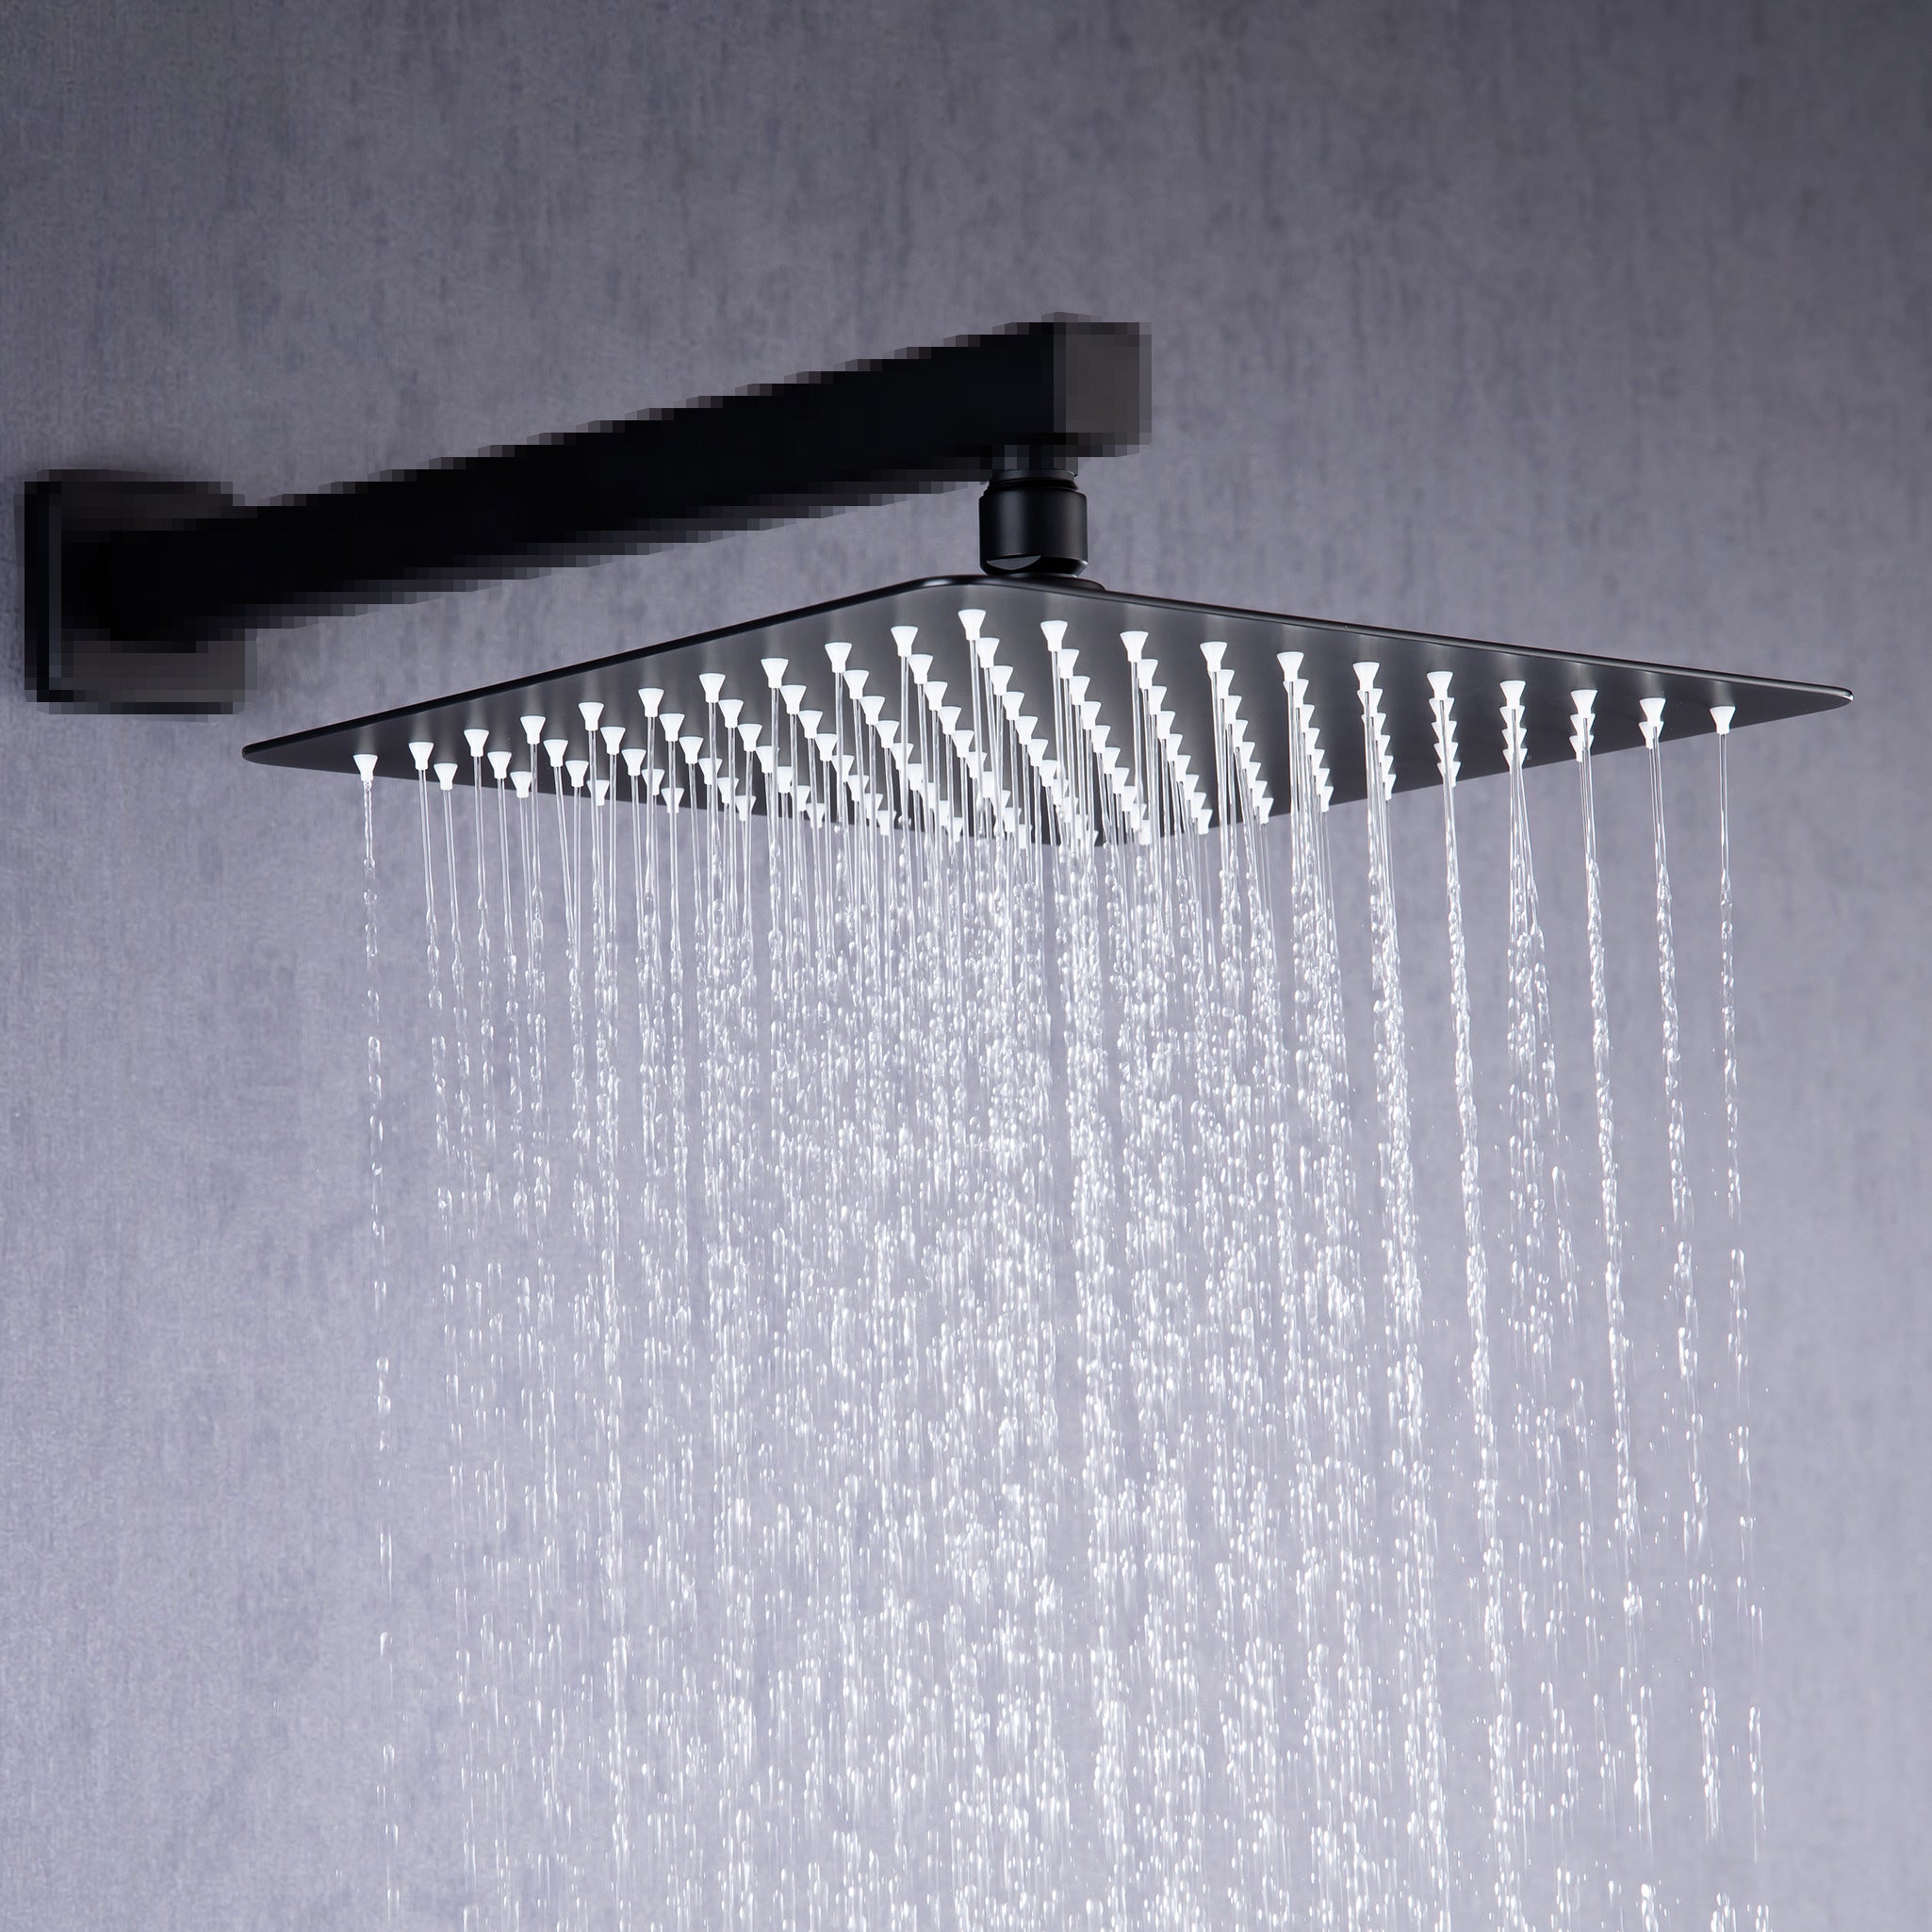 8" Square Rain Fixed Shower Head 1.8 GPM D1-8